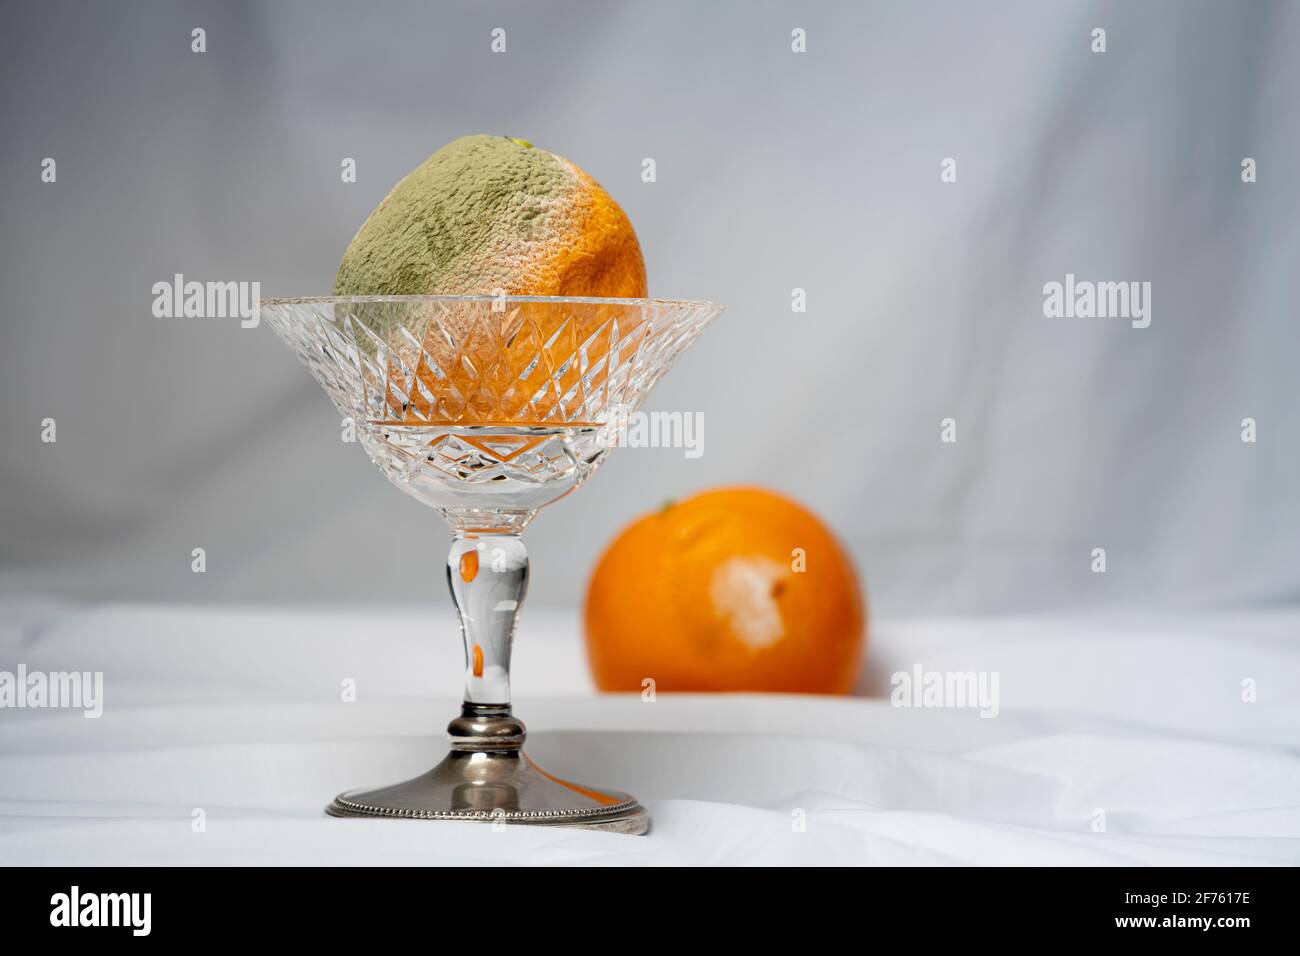 Agrume d'arancia marcio con muffa verde che cresce sul pelle in una ciotola di vetro tagliata Foto Stock